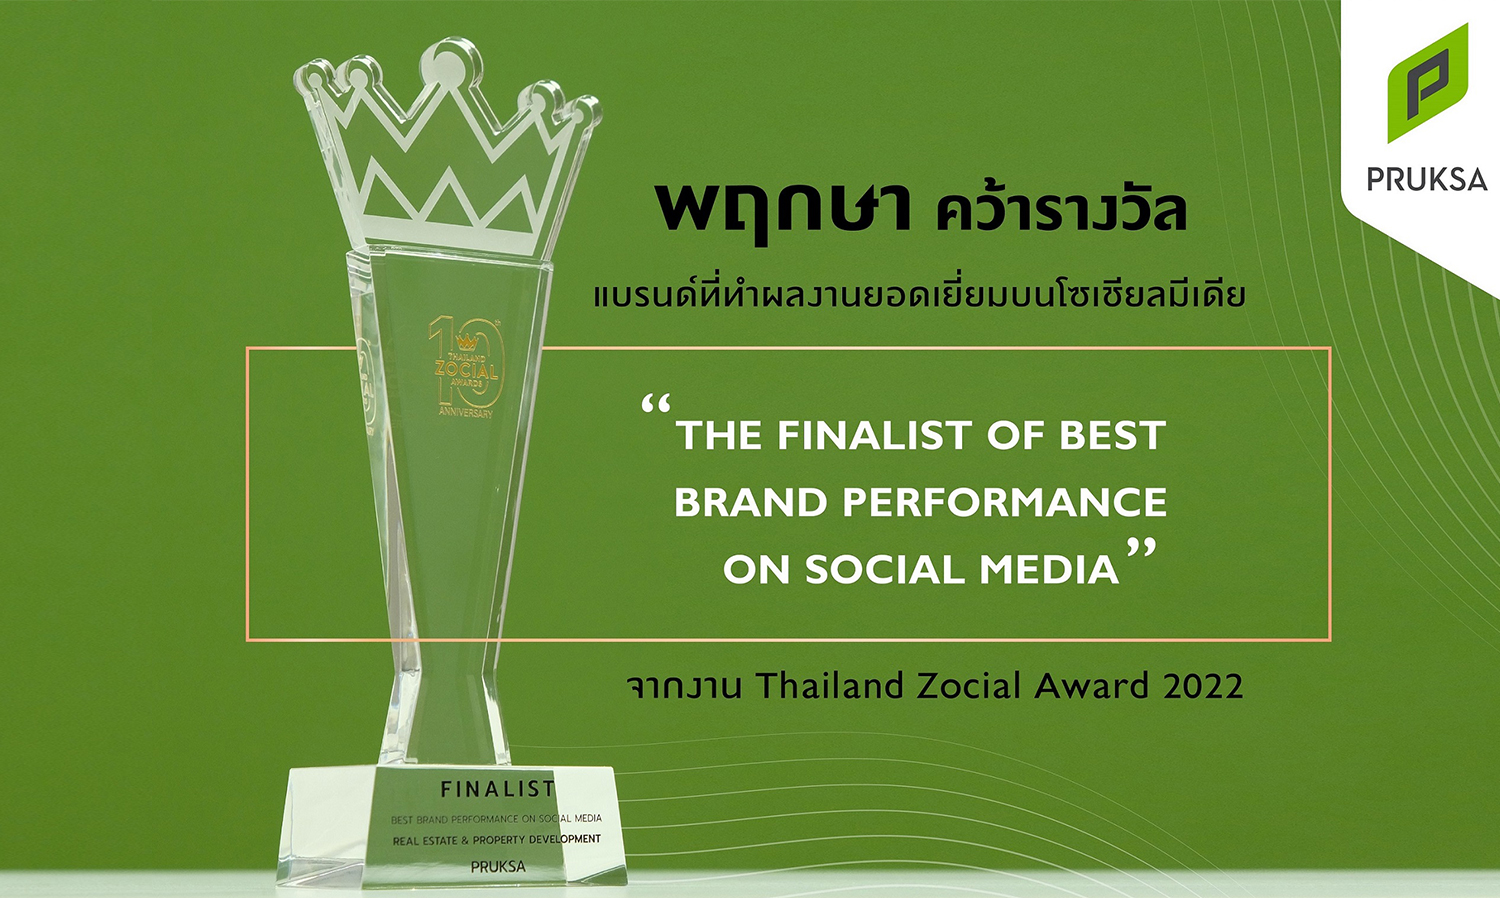 พฤกษา-สร้างผลงานโดดเด่นบนโลกโซเชียลคว้ารางวัลจากงาน-thailand-zocial-award-2022